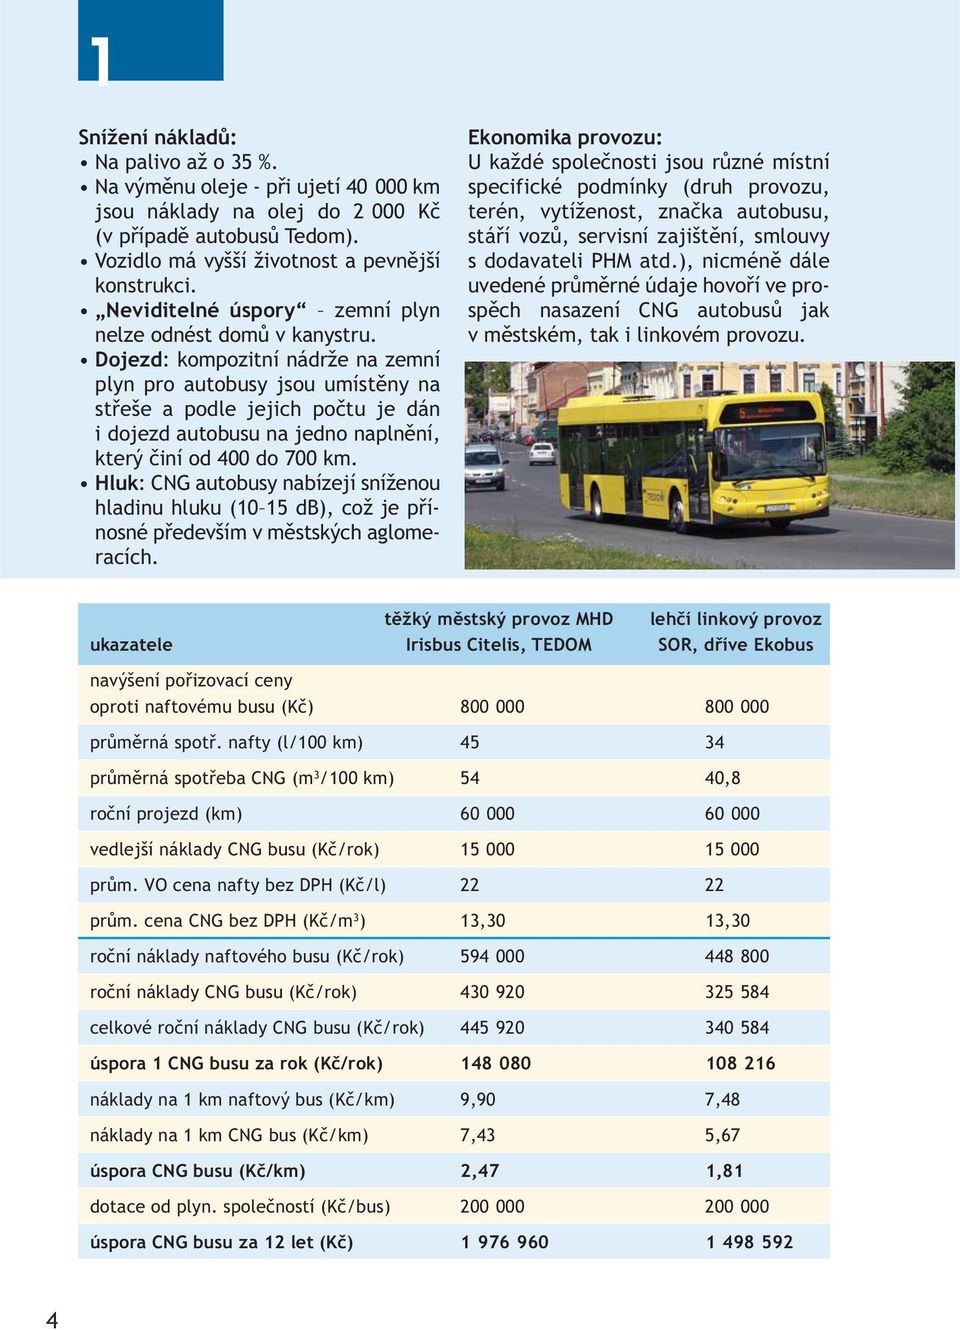 Dojezd: kompozitní nádrže na zemní plyn pro autobusy jsou umístěny na střeše a podle jejich počtu je dán i dojezd autobusu na jedno naplnění, který činí od 400 do 700 km.